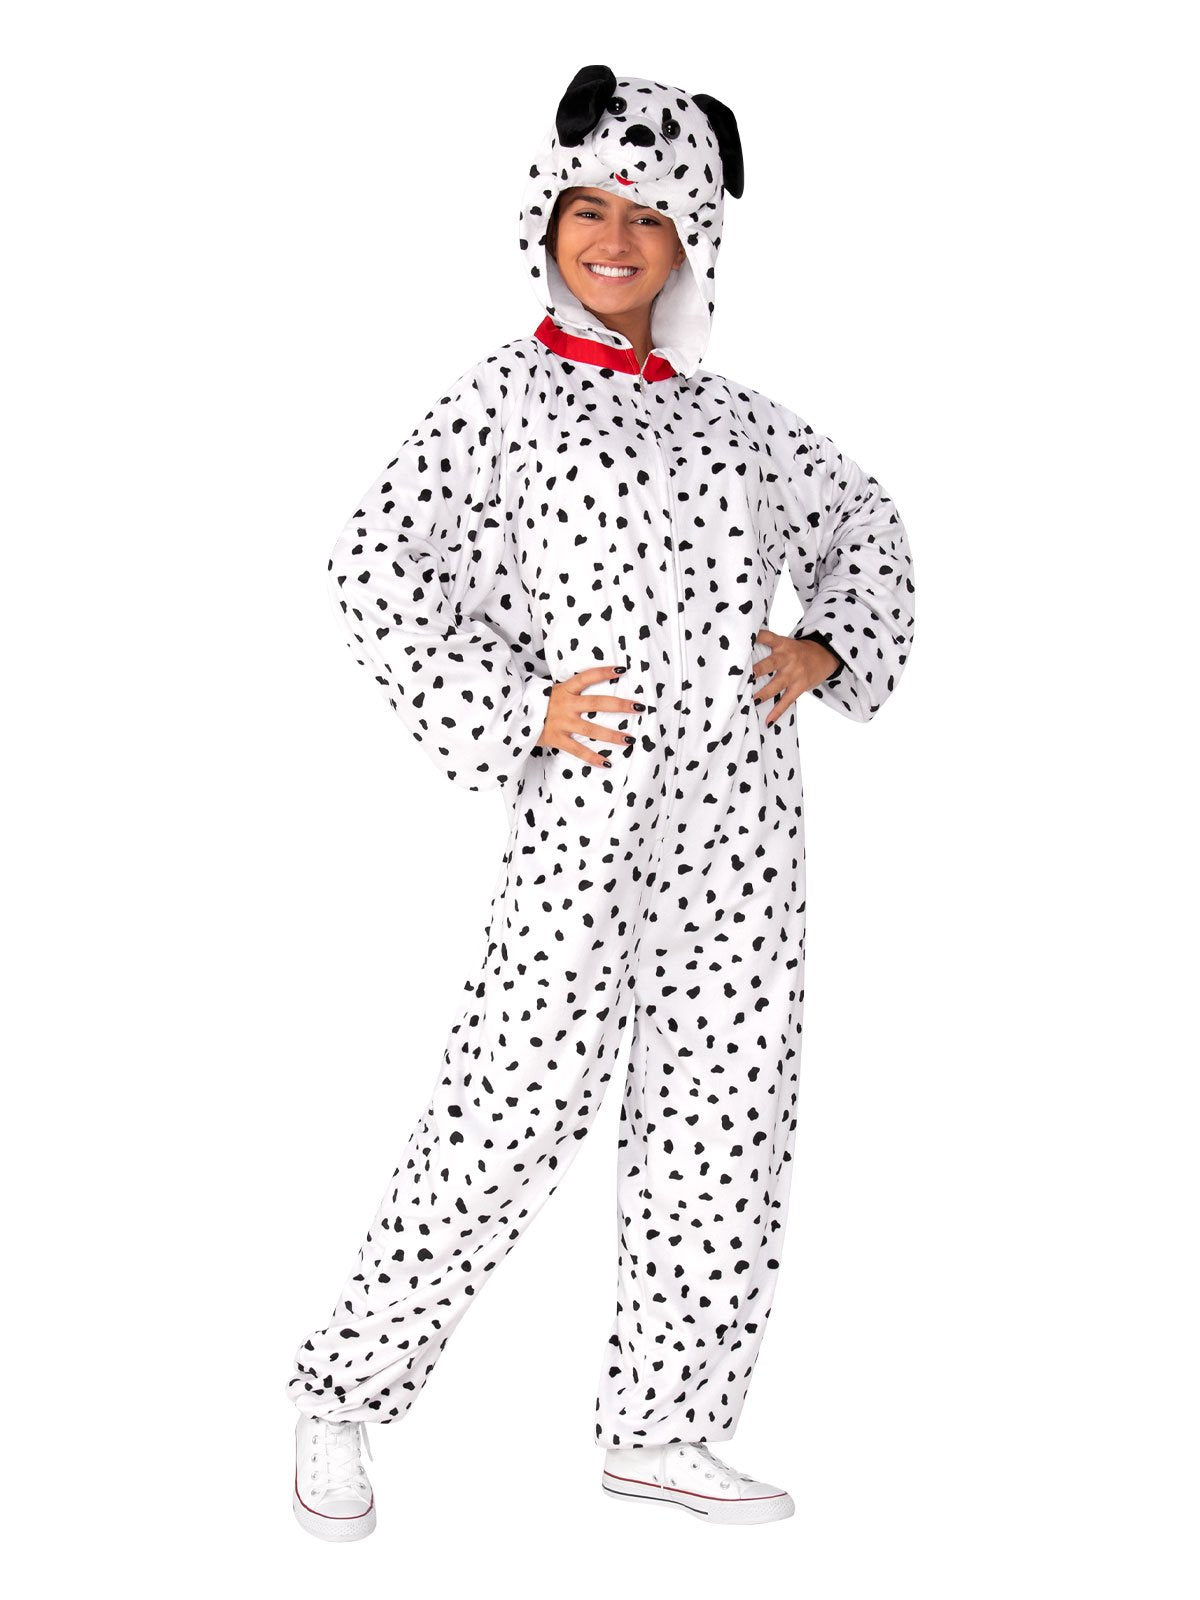 Costume Adult Dalmatian Dog Onies Medium